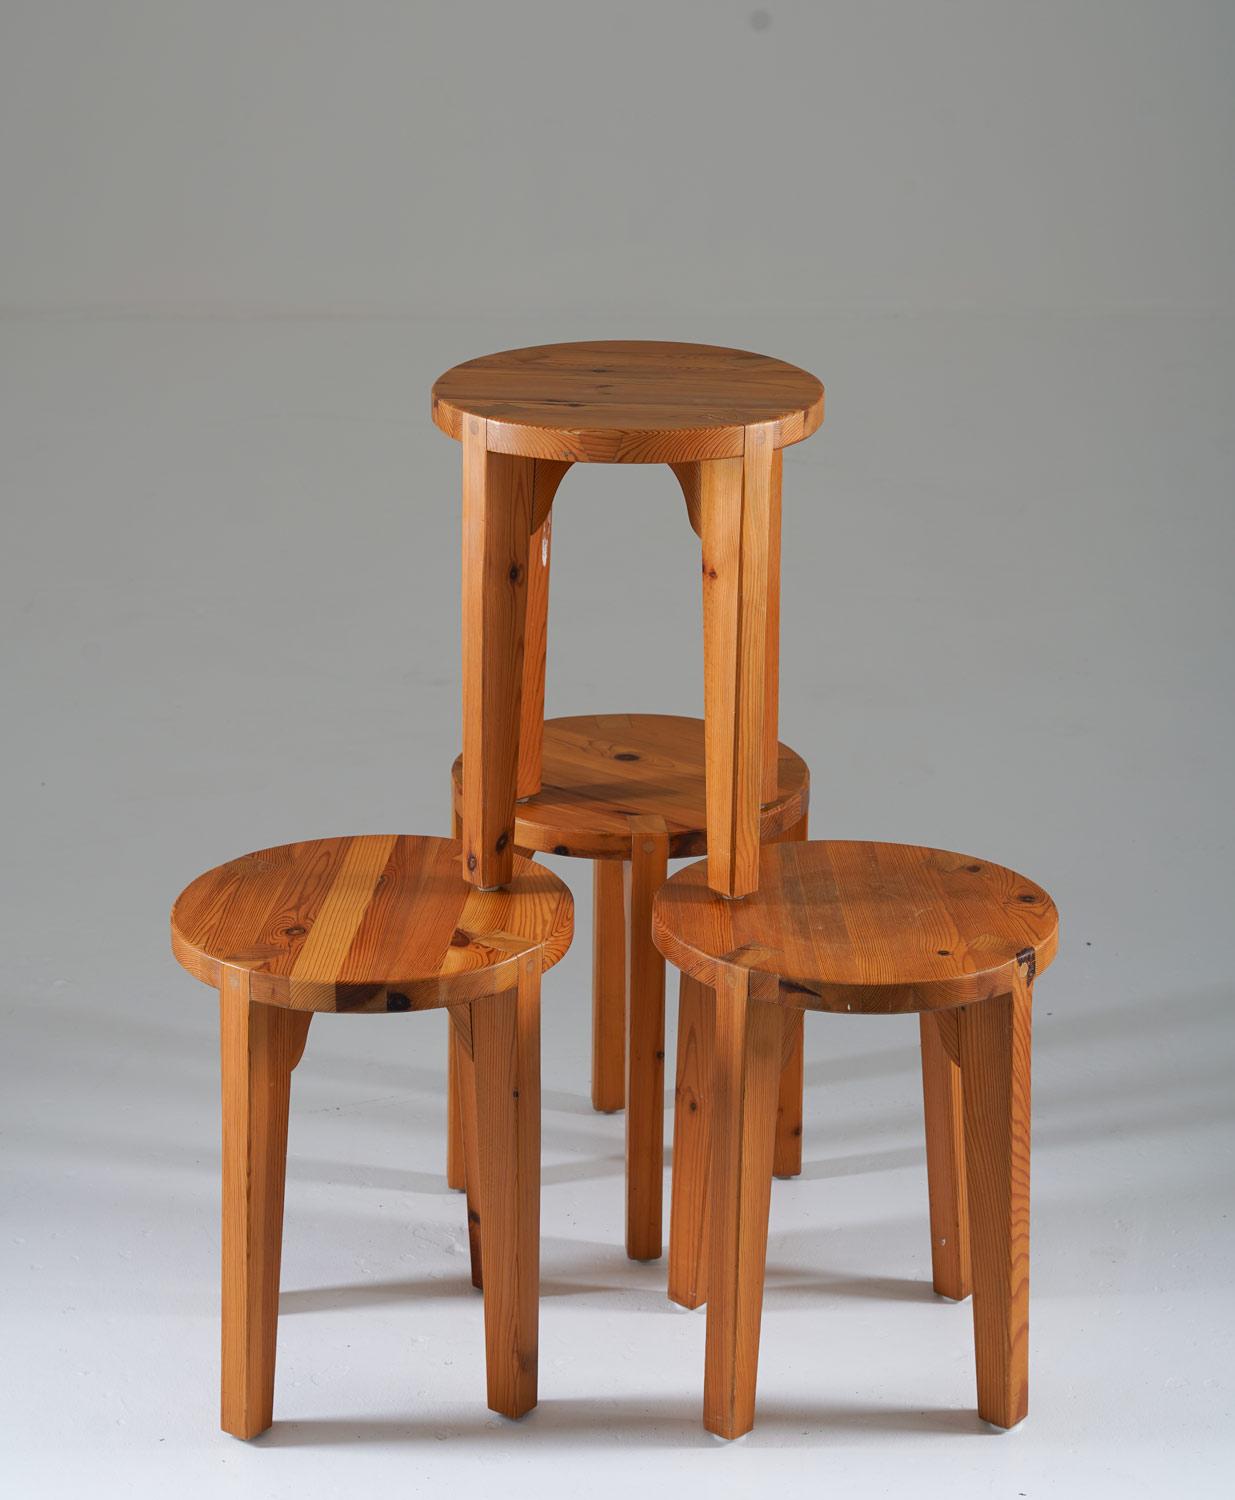 Seltene Hocker, hergestellt in Schweden, ca. 1970. 
Studio Craft Hocker mit runder Sitzfläche, die auf vier Beinen ruht, die mit sichtbaren Tischlerarbeiten schön verbunden sind.

Zustand: Guter Originalzustand mit leichter Patina.